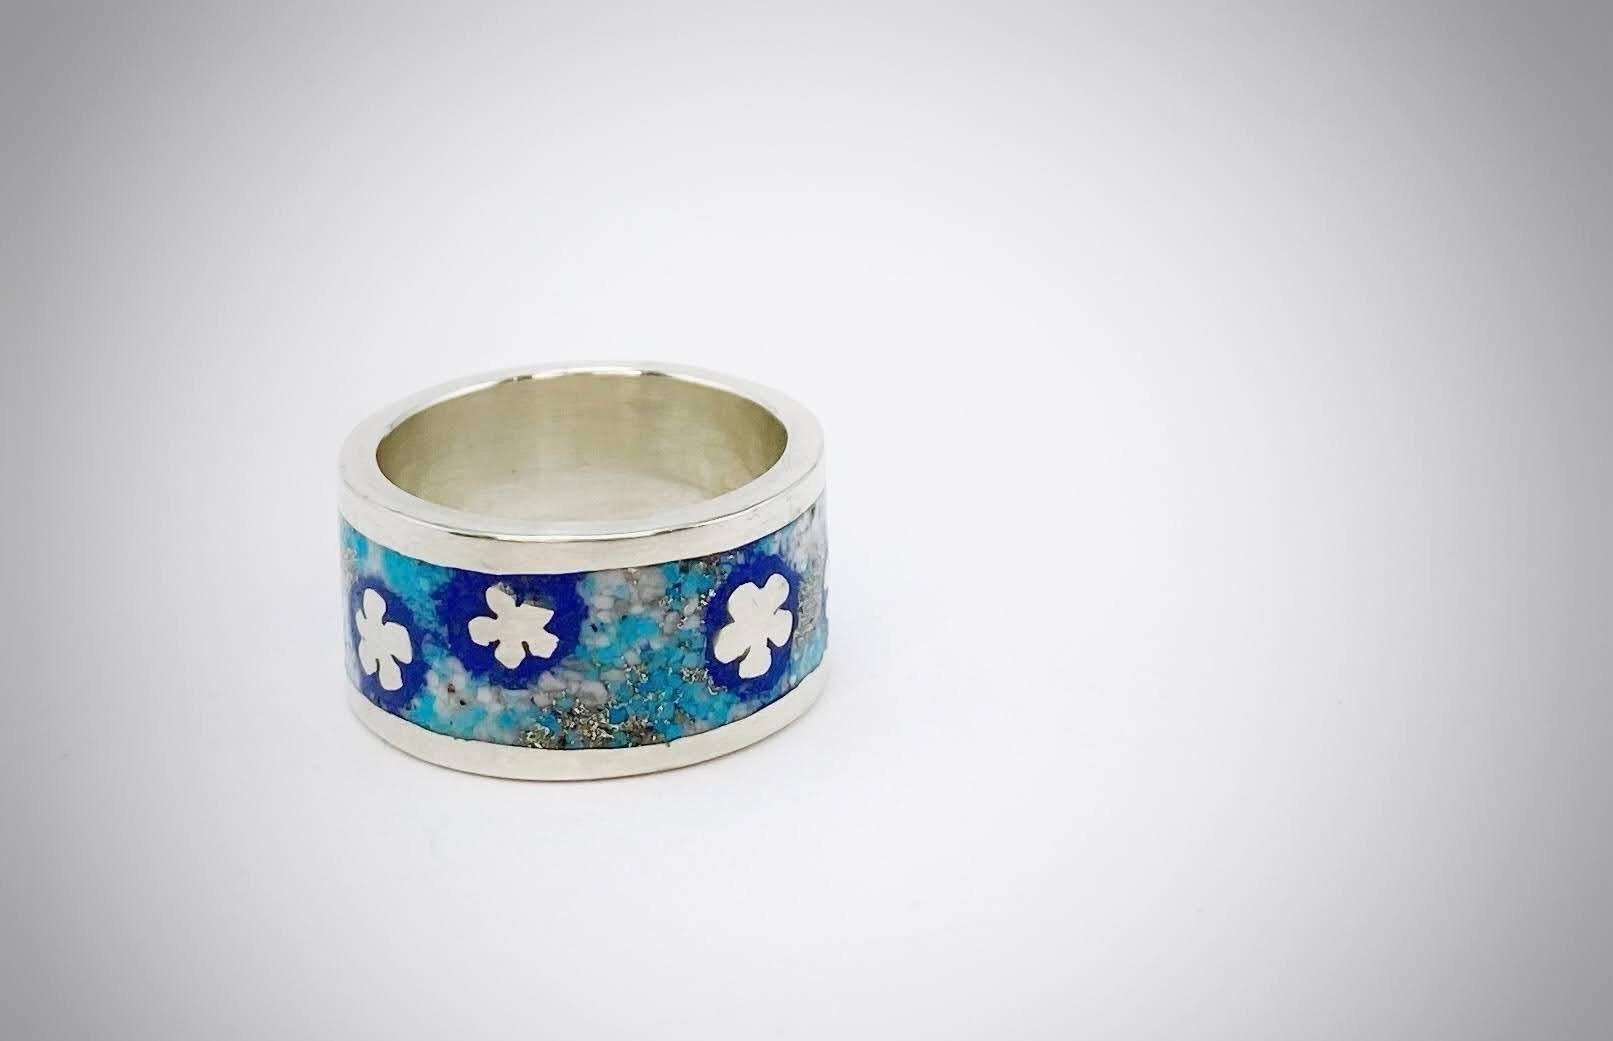 Türkis Silberring, Mosaik Ring, Silber Staub Kohle Blumen Bandring, Stapelbarer Daumenring, Art Deco Ring von ArtissimoArtGallery